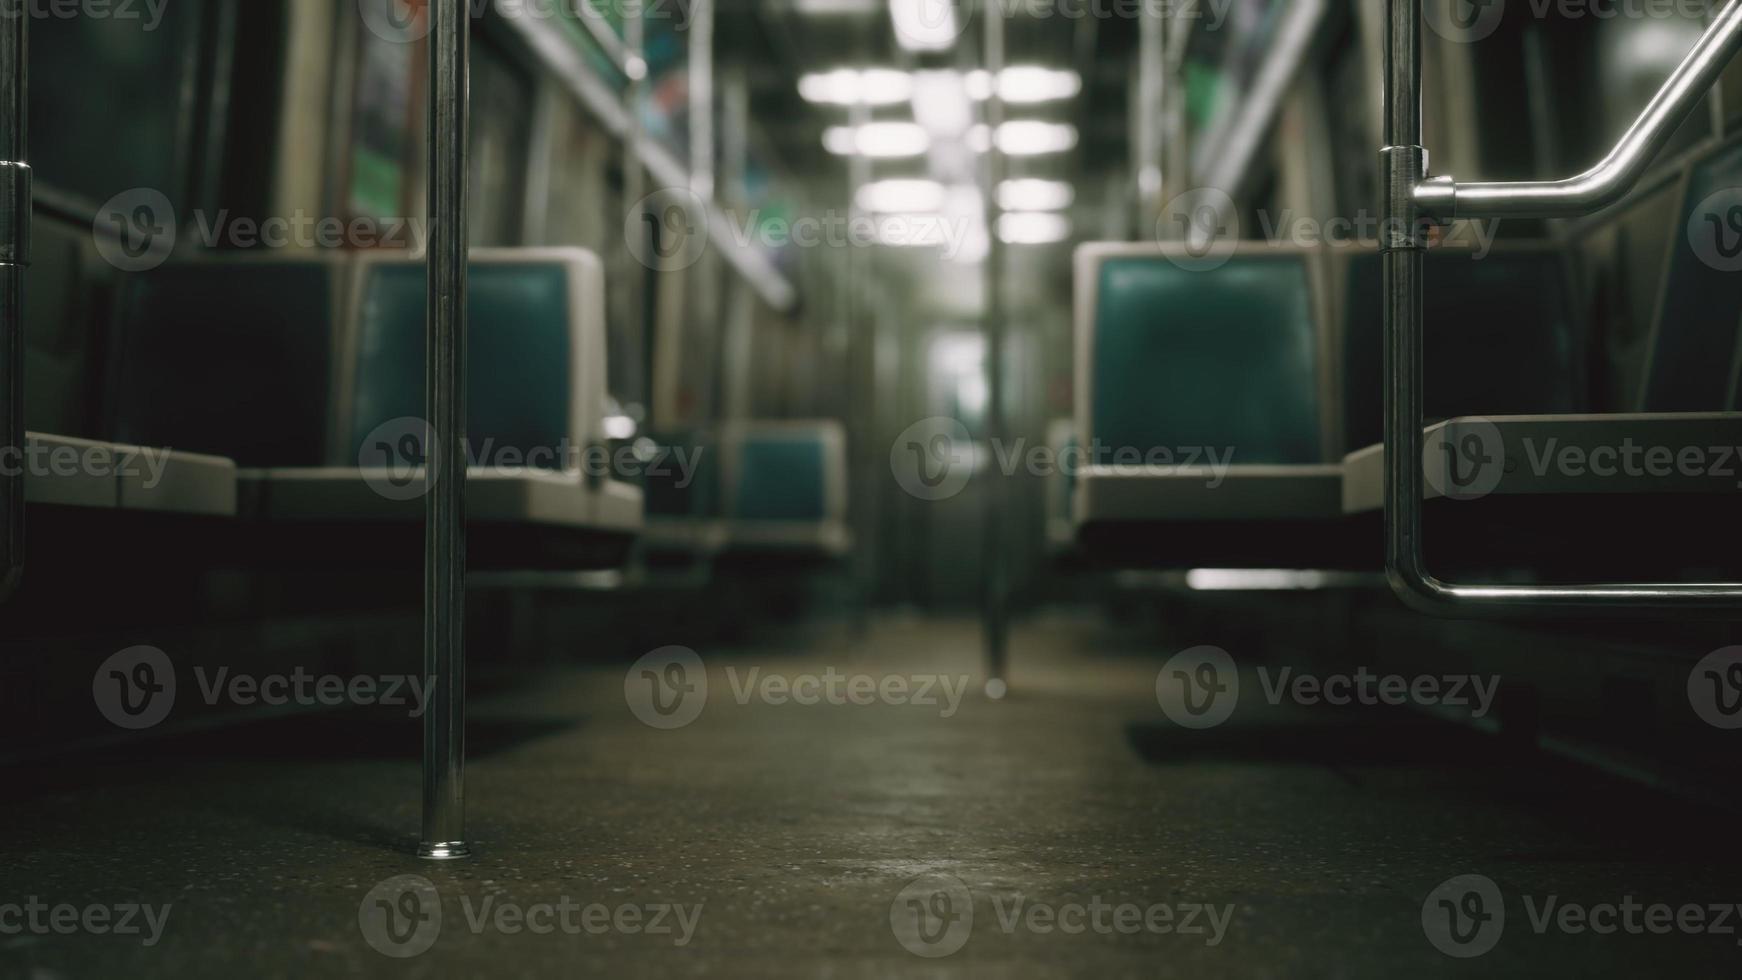 voiture de métro aux états-unis vide à cause de l'épidémie de coronavirus covid-19 photo